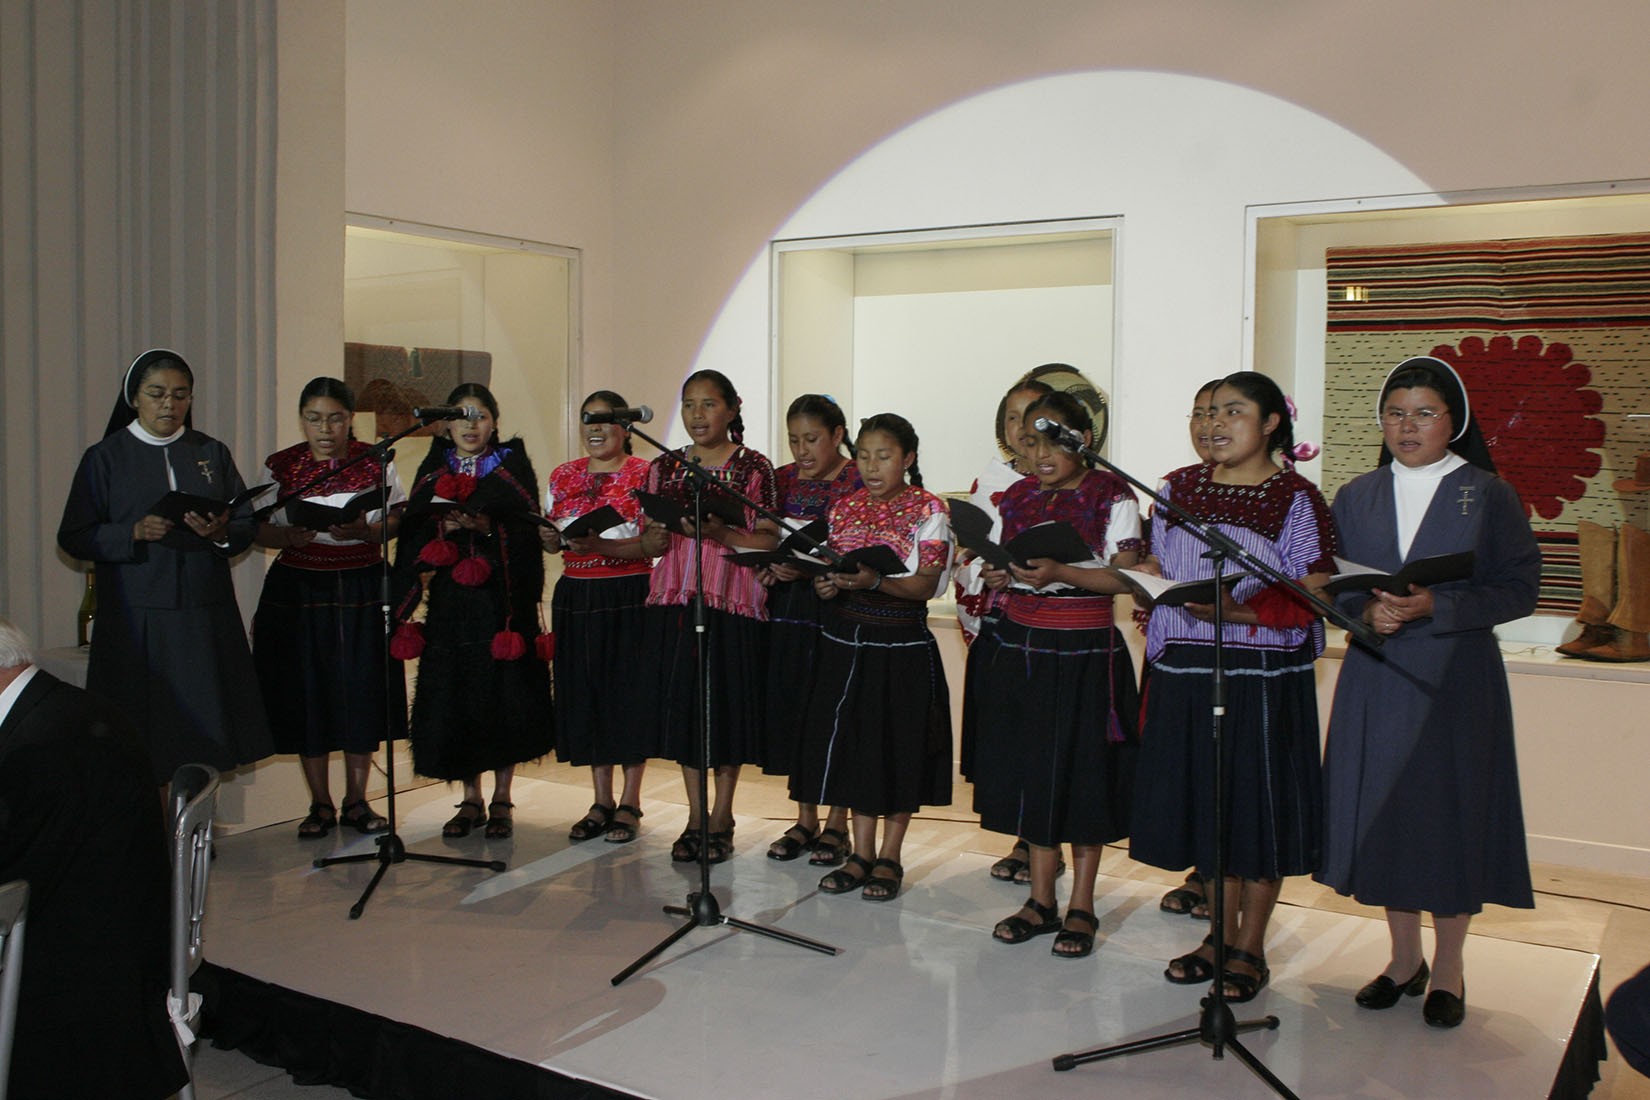 Presentación de coro de niñas  de San Cristóbal de las Casas, en la inauguración del Museo de Arte Popular. (Foto: AmigosMAP).